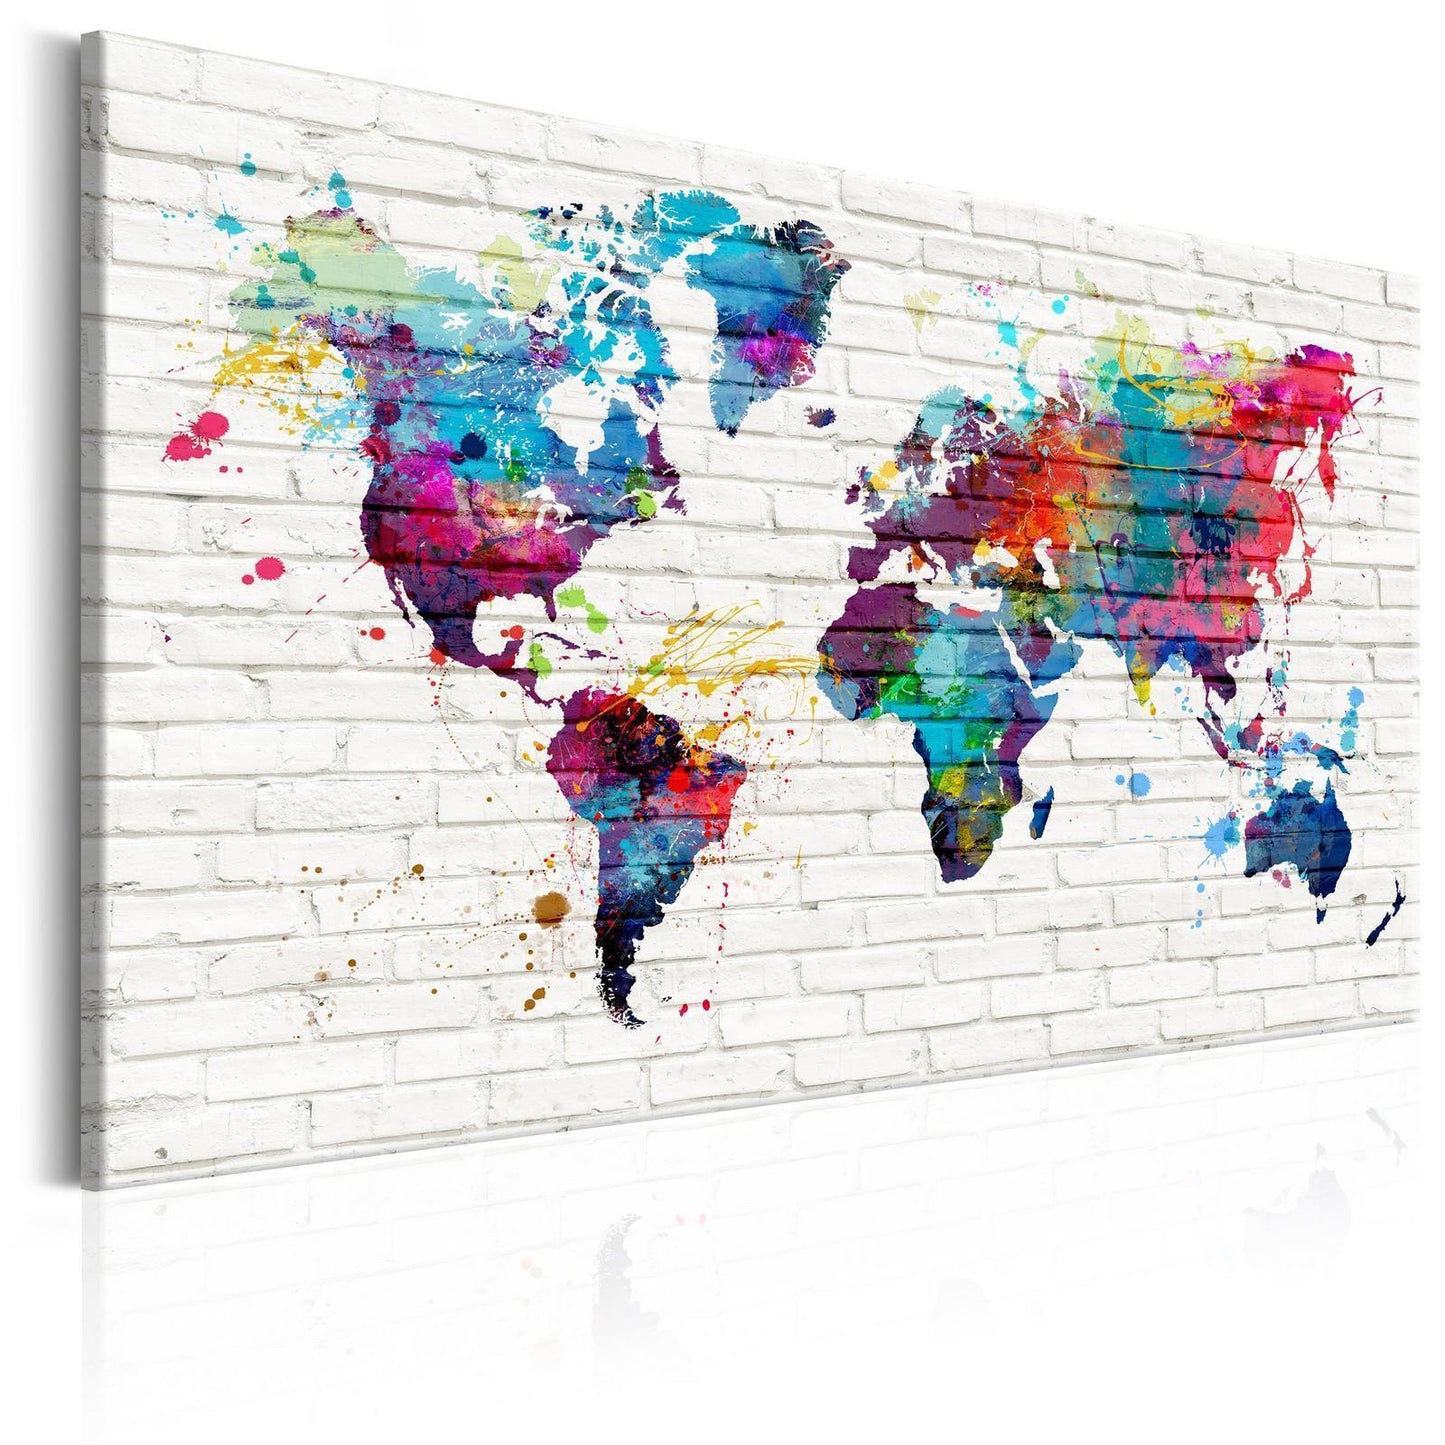 Afbeelding op kurk - Walls of the World